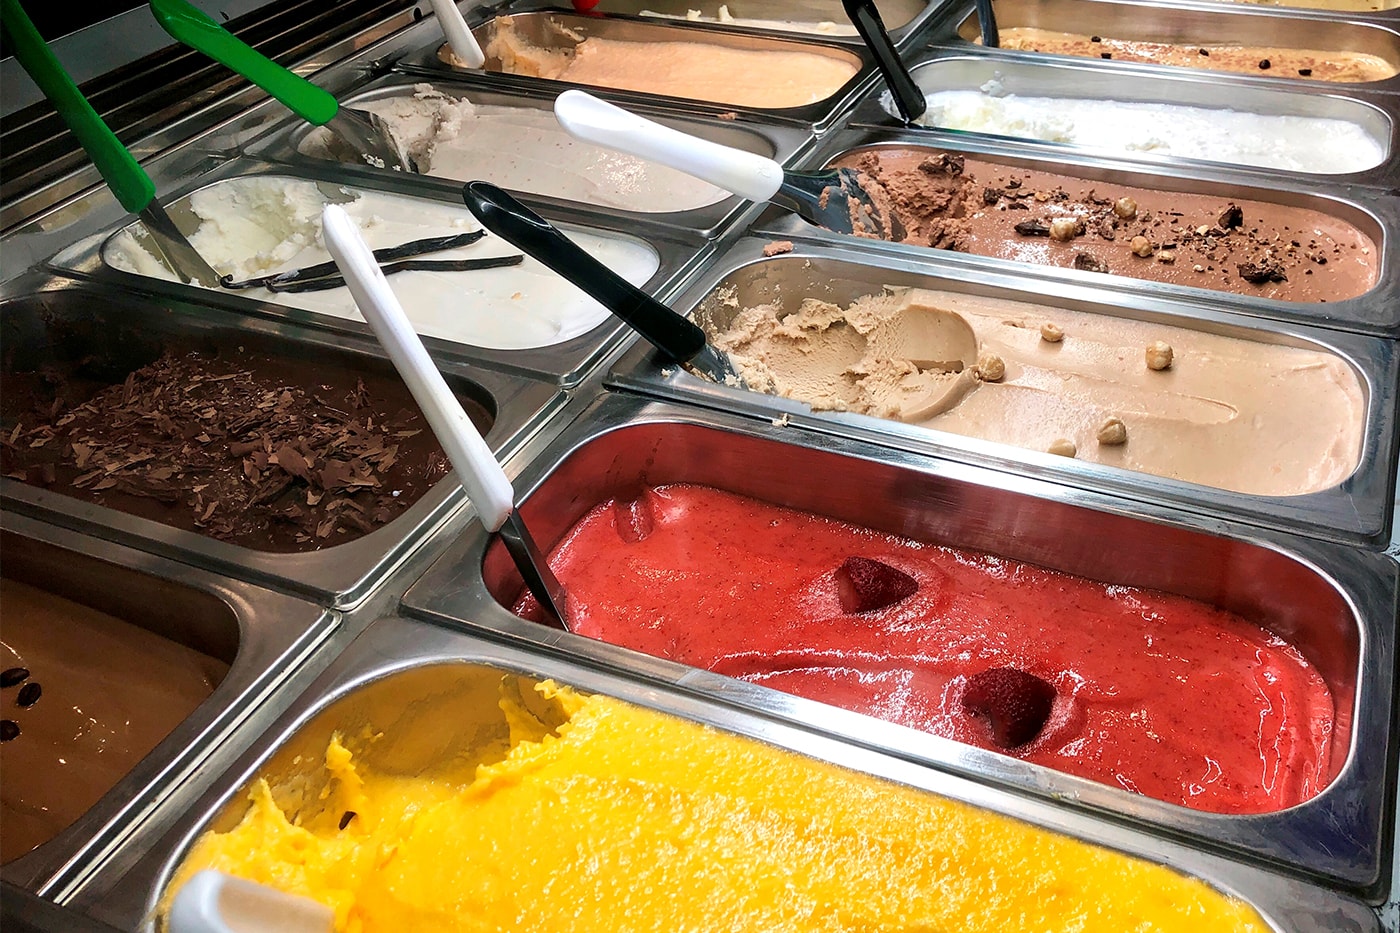 イタリア国内で“低品質のジェラート”を販売すると罰金が科せられる法律が誕生か Italy Considers Fining Vendors Gelato Ingredients Law desserts 